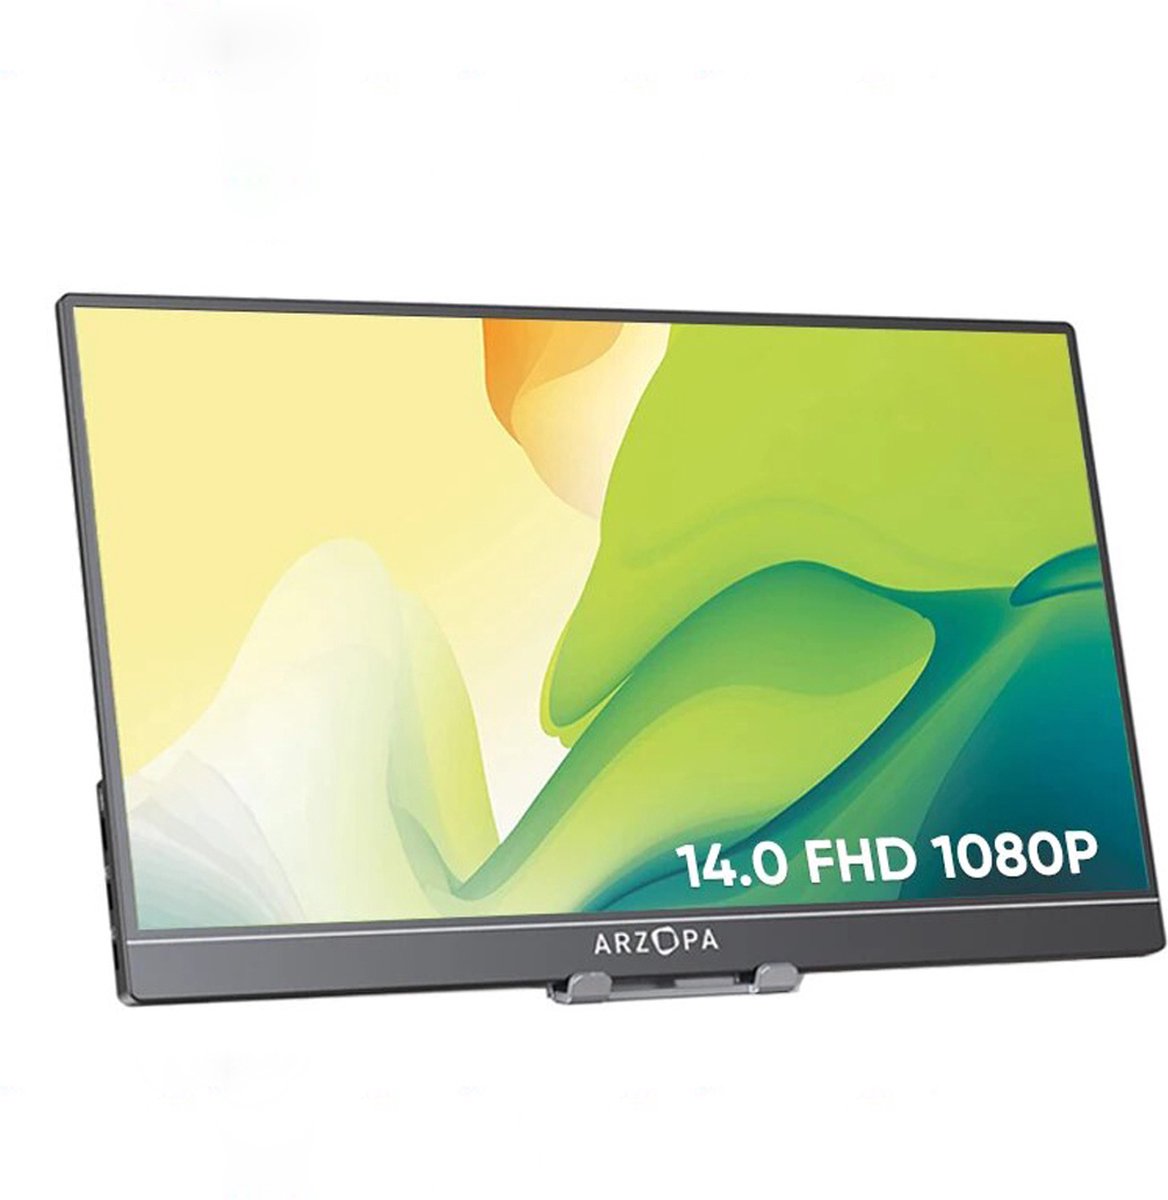 Hoge Kwaliteit Grijze Full HD Portable Monitor - Draagbare Monitoren - Draagbaar Scherm - 2 USB Ingangen - Externe Laptop Scherm met HDMI - 60Hertz